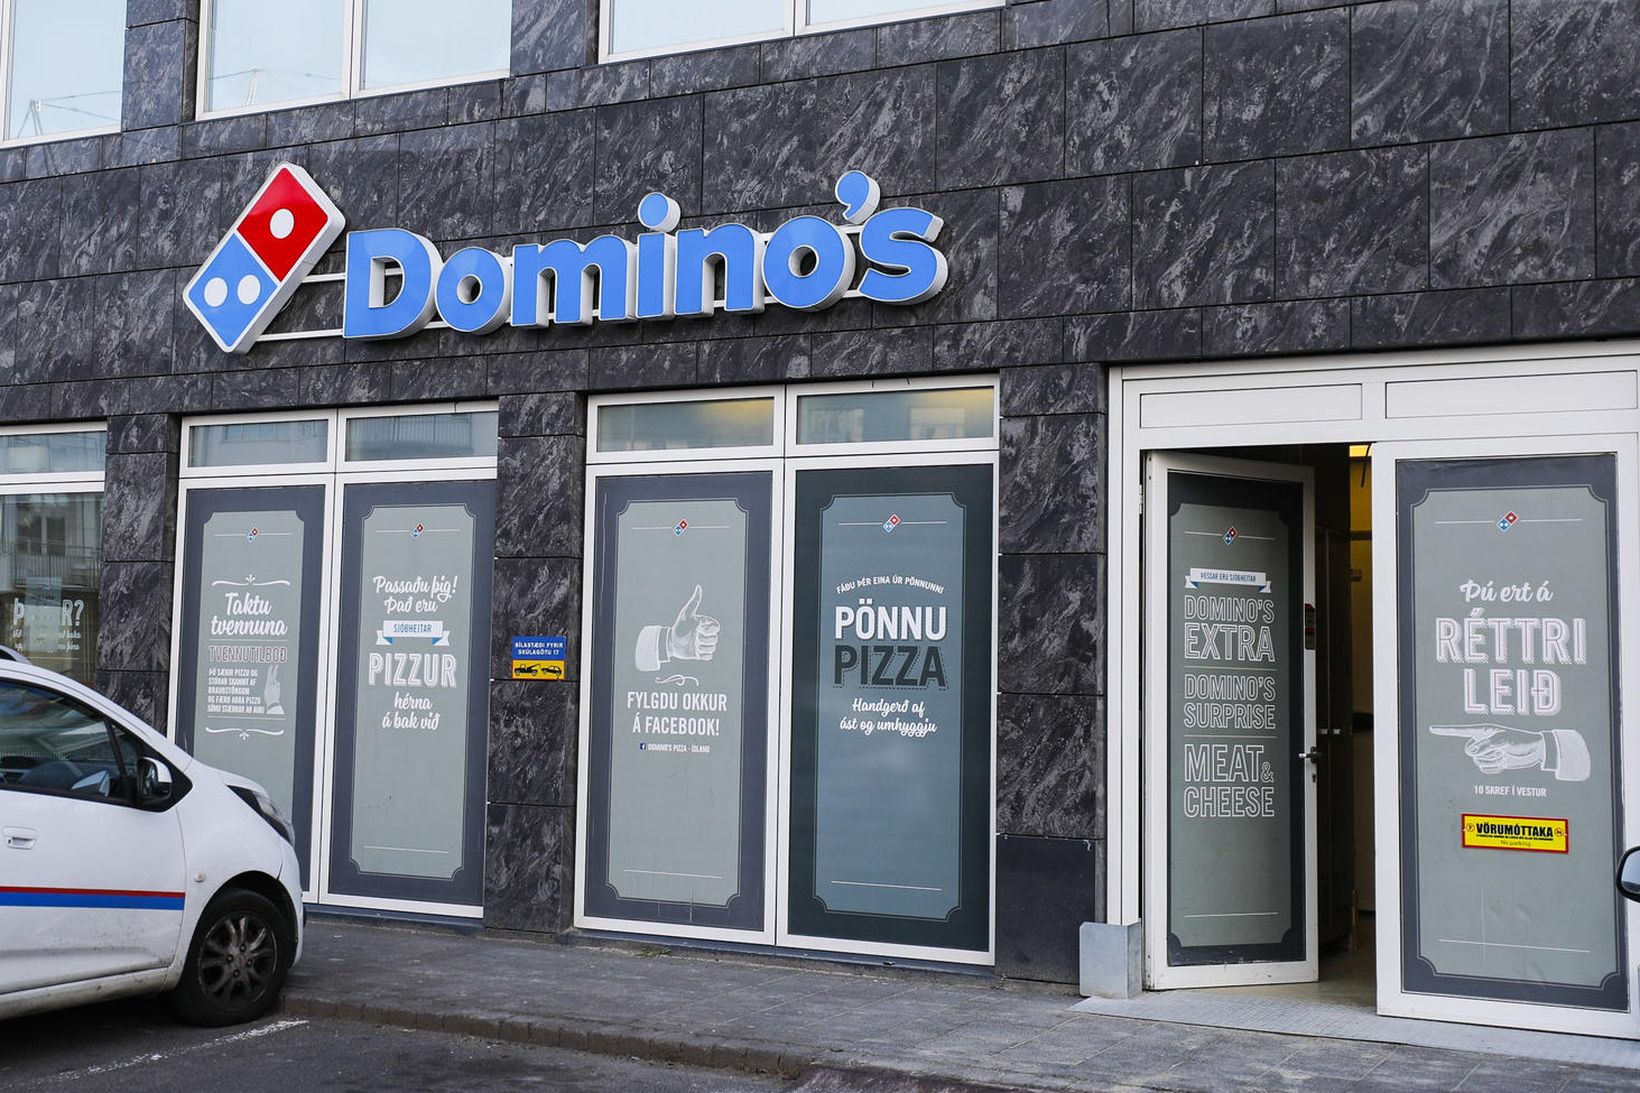 Domino's.